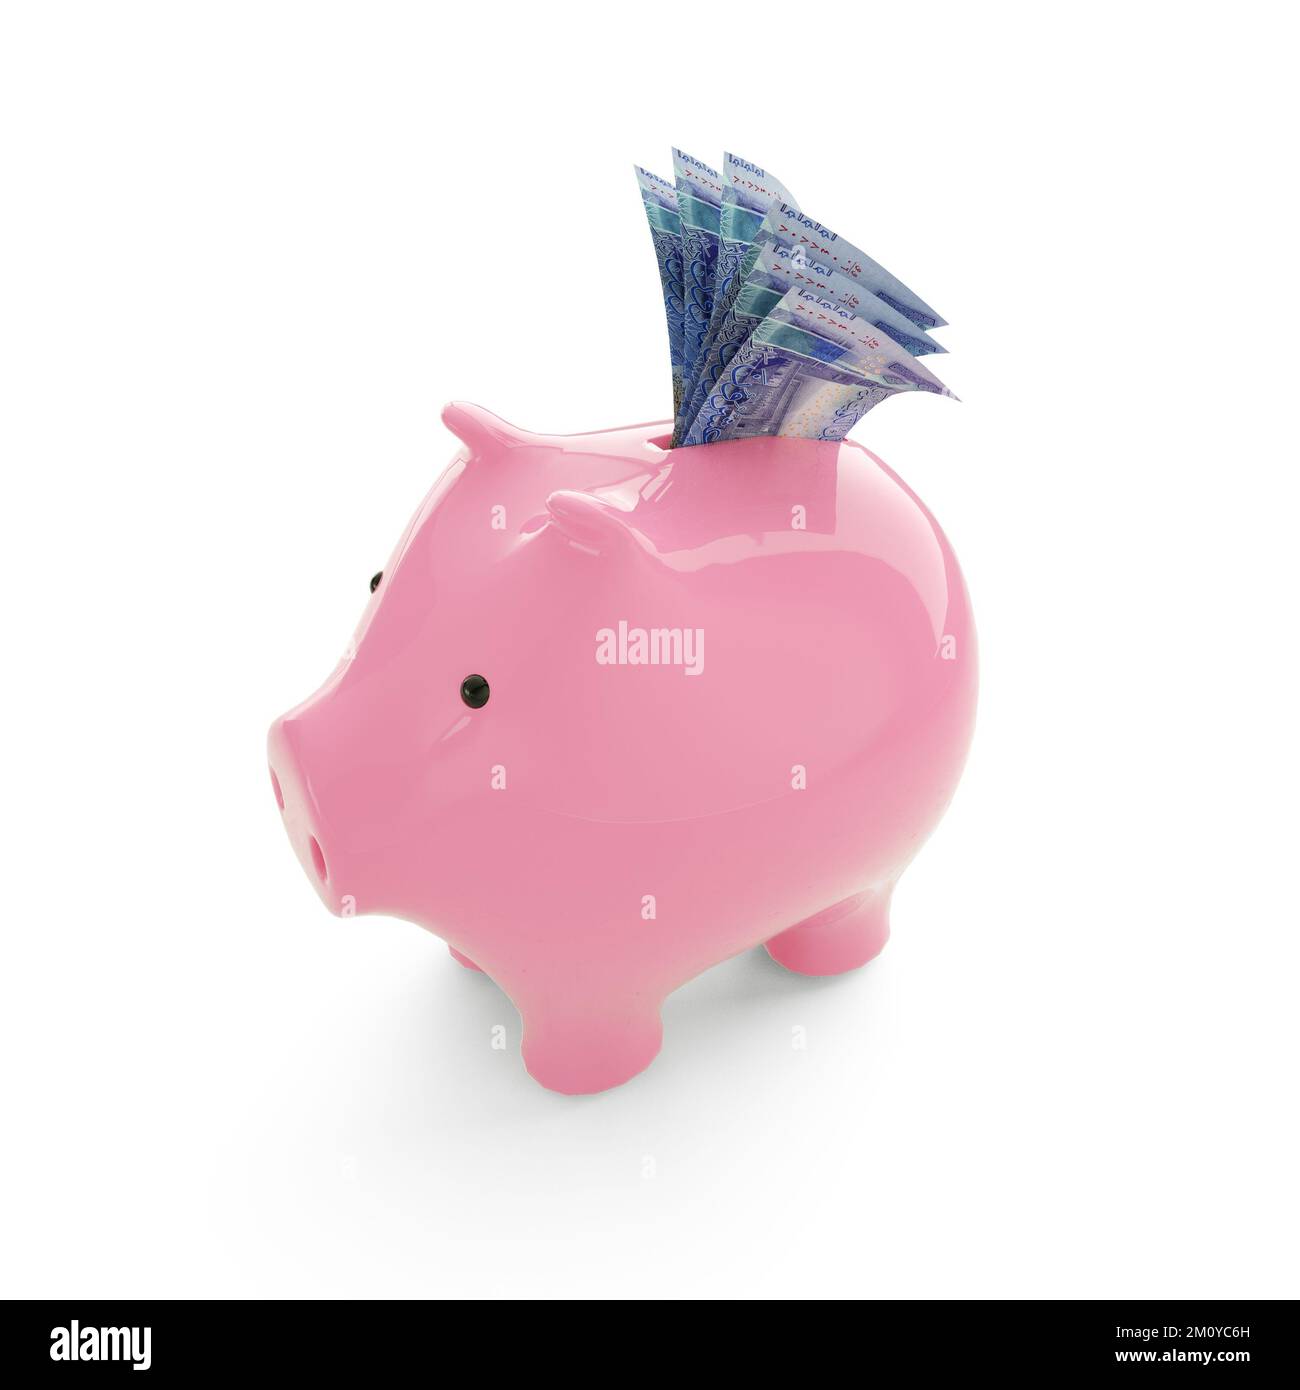 Dinaro kuwaitiano all'interno del salvadanaio rosa, soldi nel salvadanaio, concetto di risparmio, rendering 3d. Foto Stock